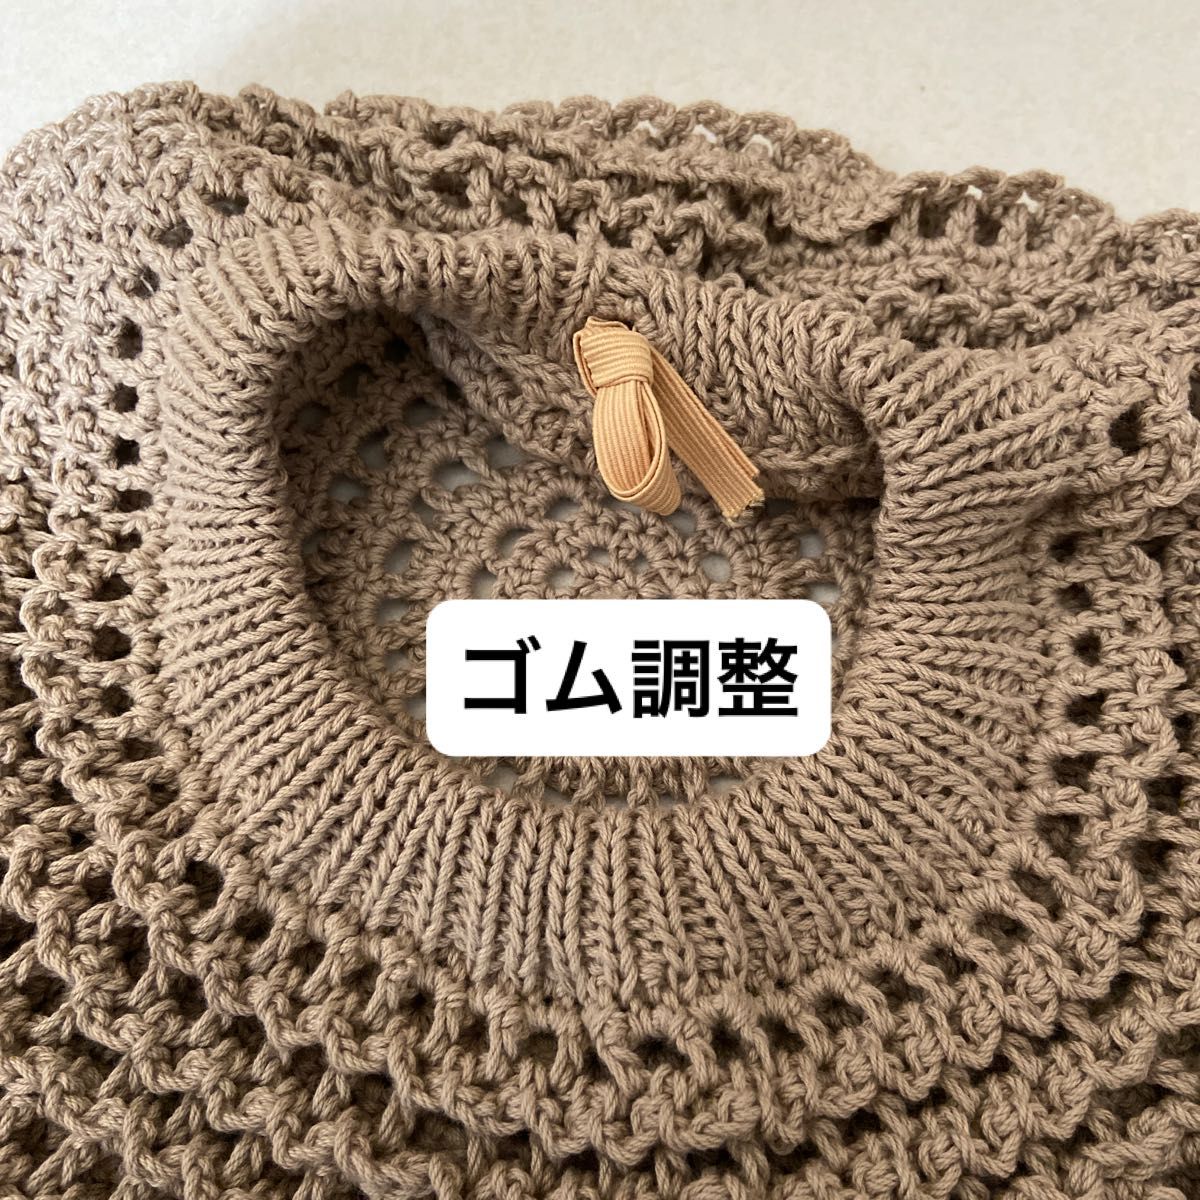 新品未使用・UVカット95%以上・日本製・綿100%・手編み・ベレー帽・ゴム調整・汗に強く柔らかな洗えるニット